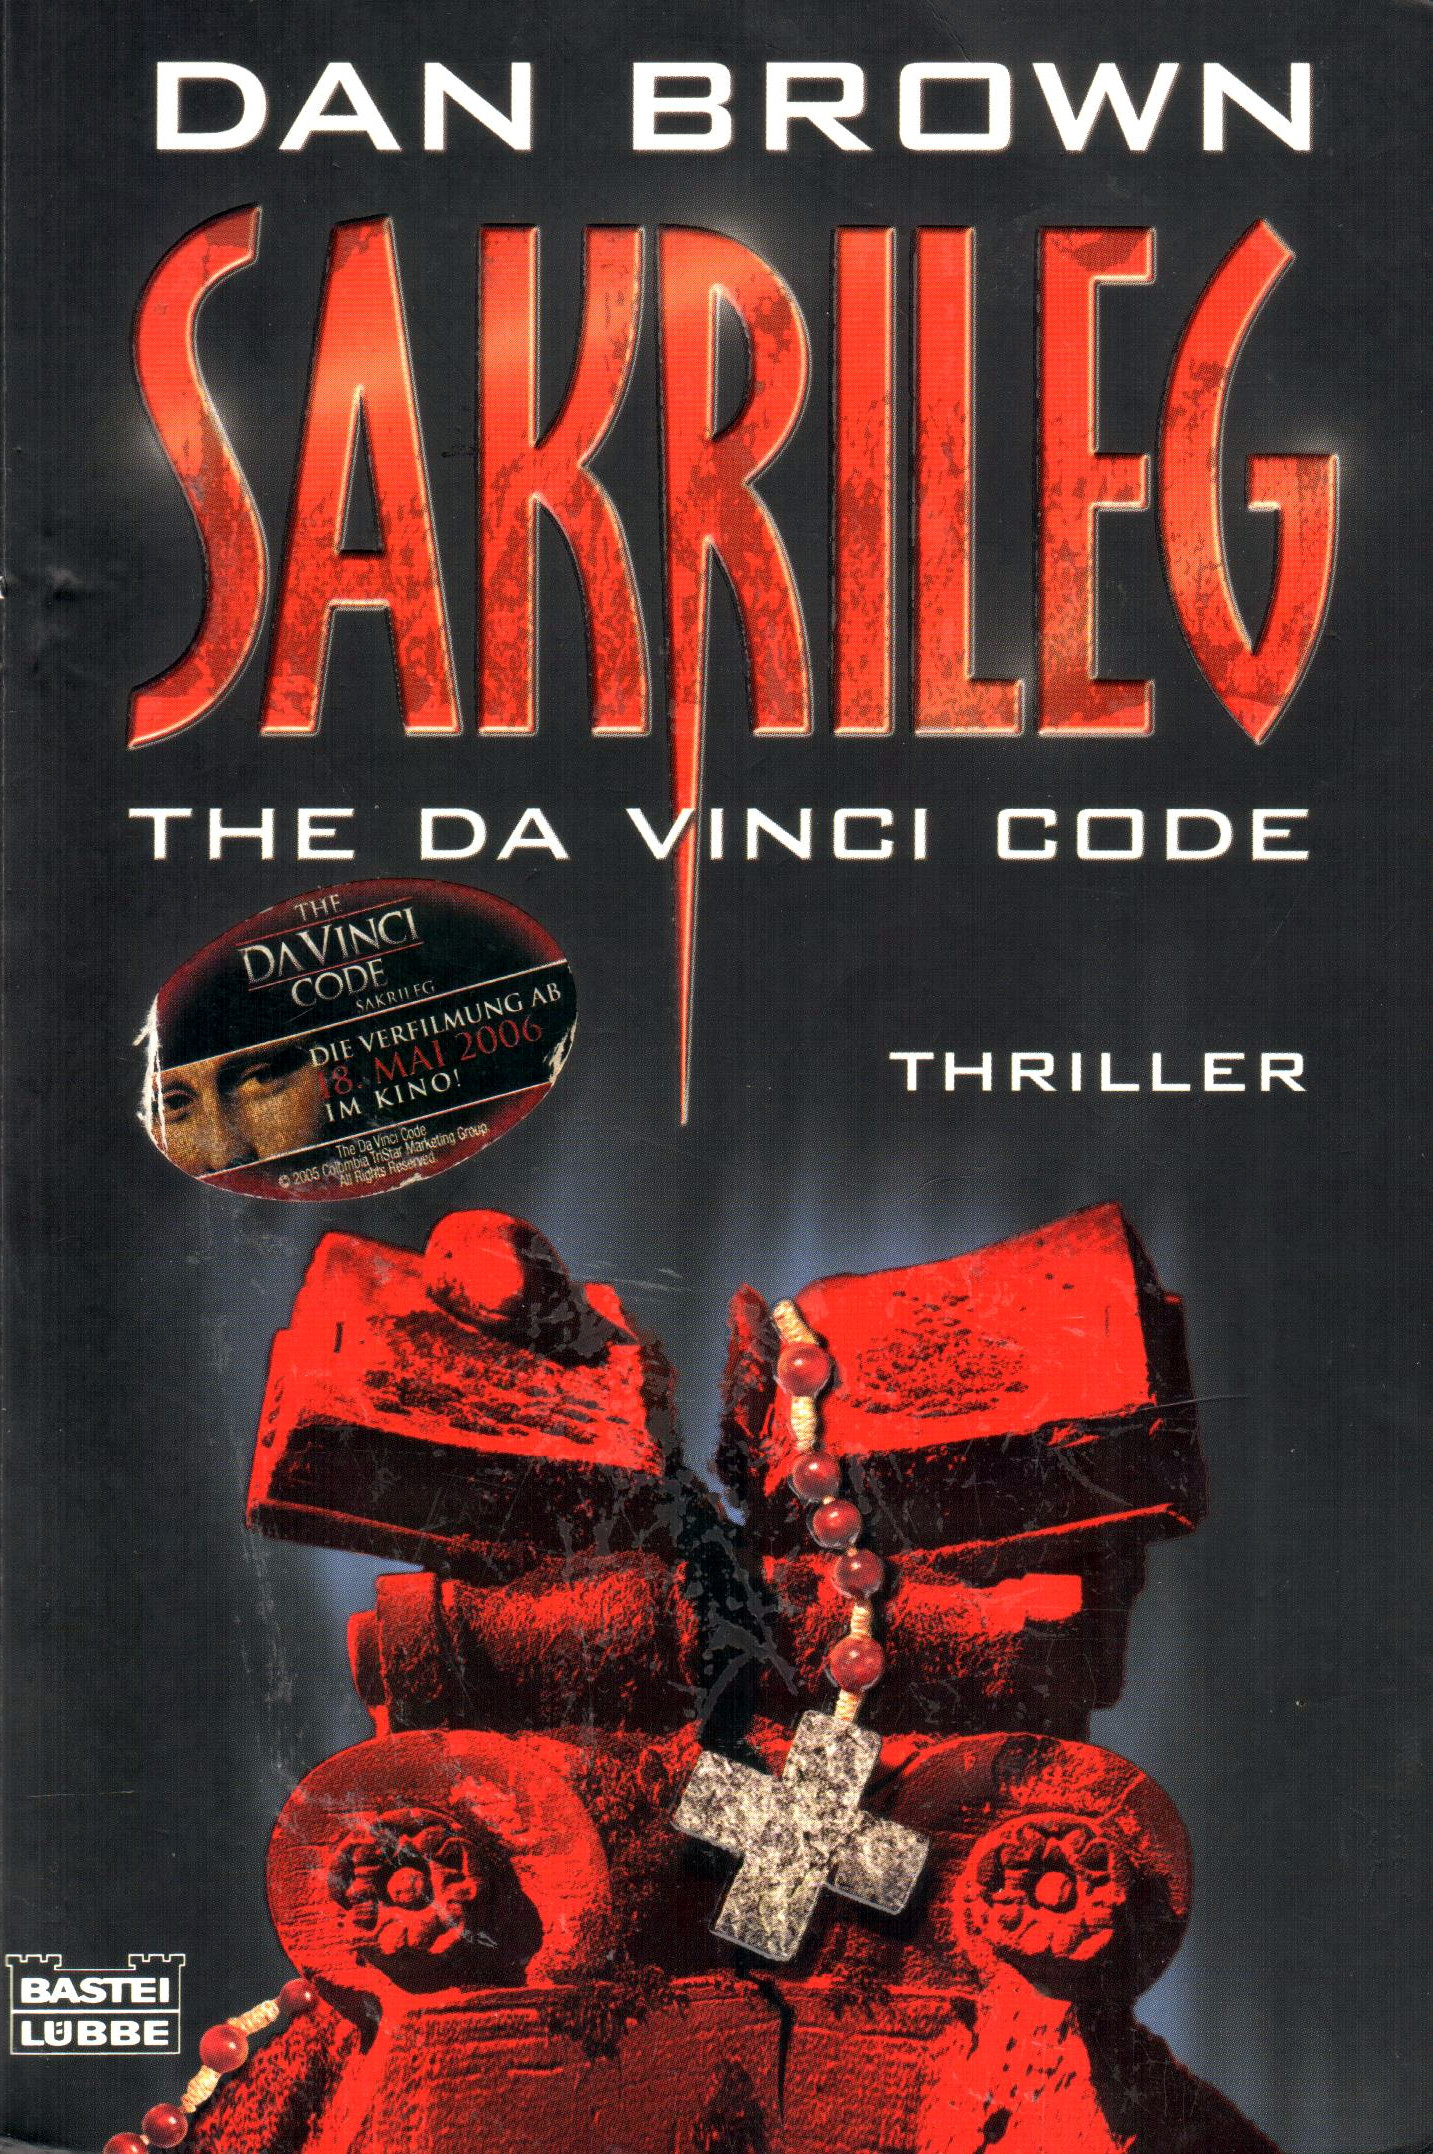 SAKRILEG – The da Vinci Code